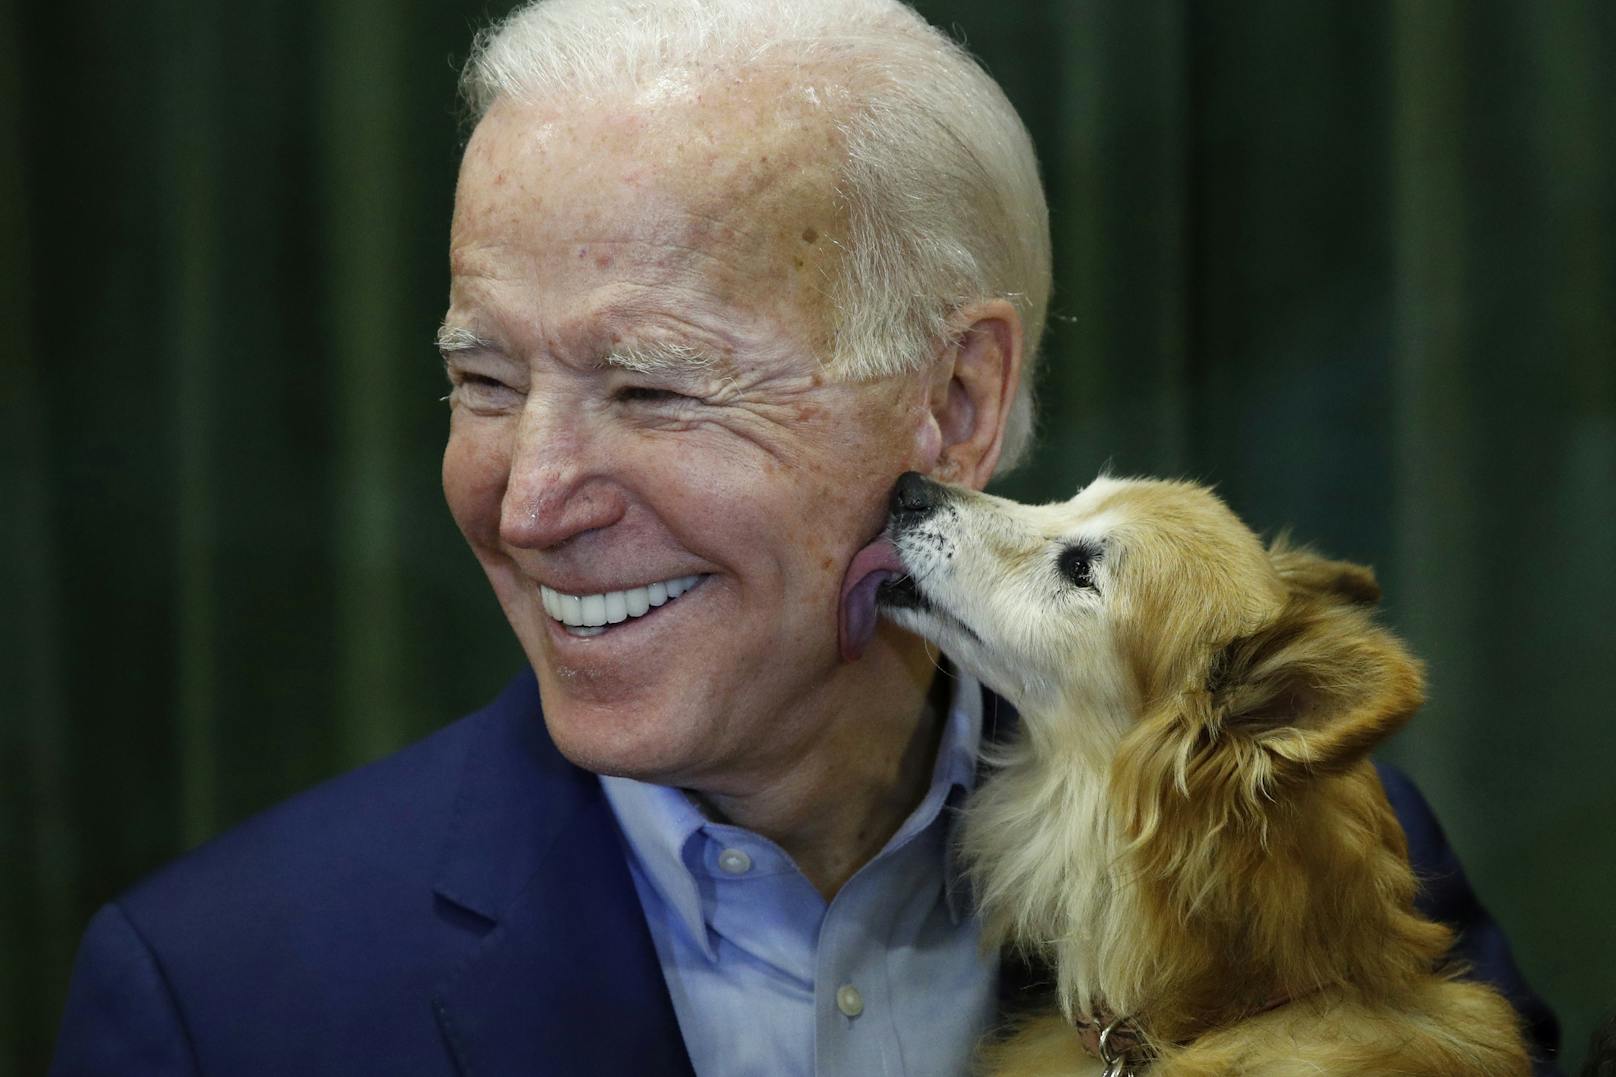 Auch Haustierliebhaber haben sich zusammengeschlossen, um Joe Biden mit dem Slogan "Hundeliebhaber für Joe" bei seiner Kandidatur zu unterstützen. <a href="https://www.heute.at/s/joe-biden-setzt-beim-wahlkampf-auf-die-vierbeiner-100110333">Mehr dazu &gt;&gt;</a>